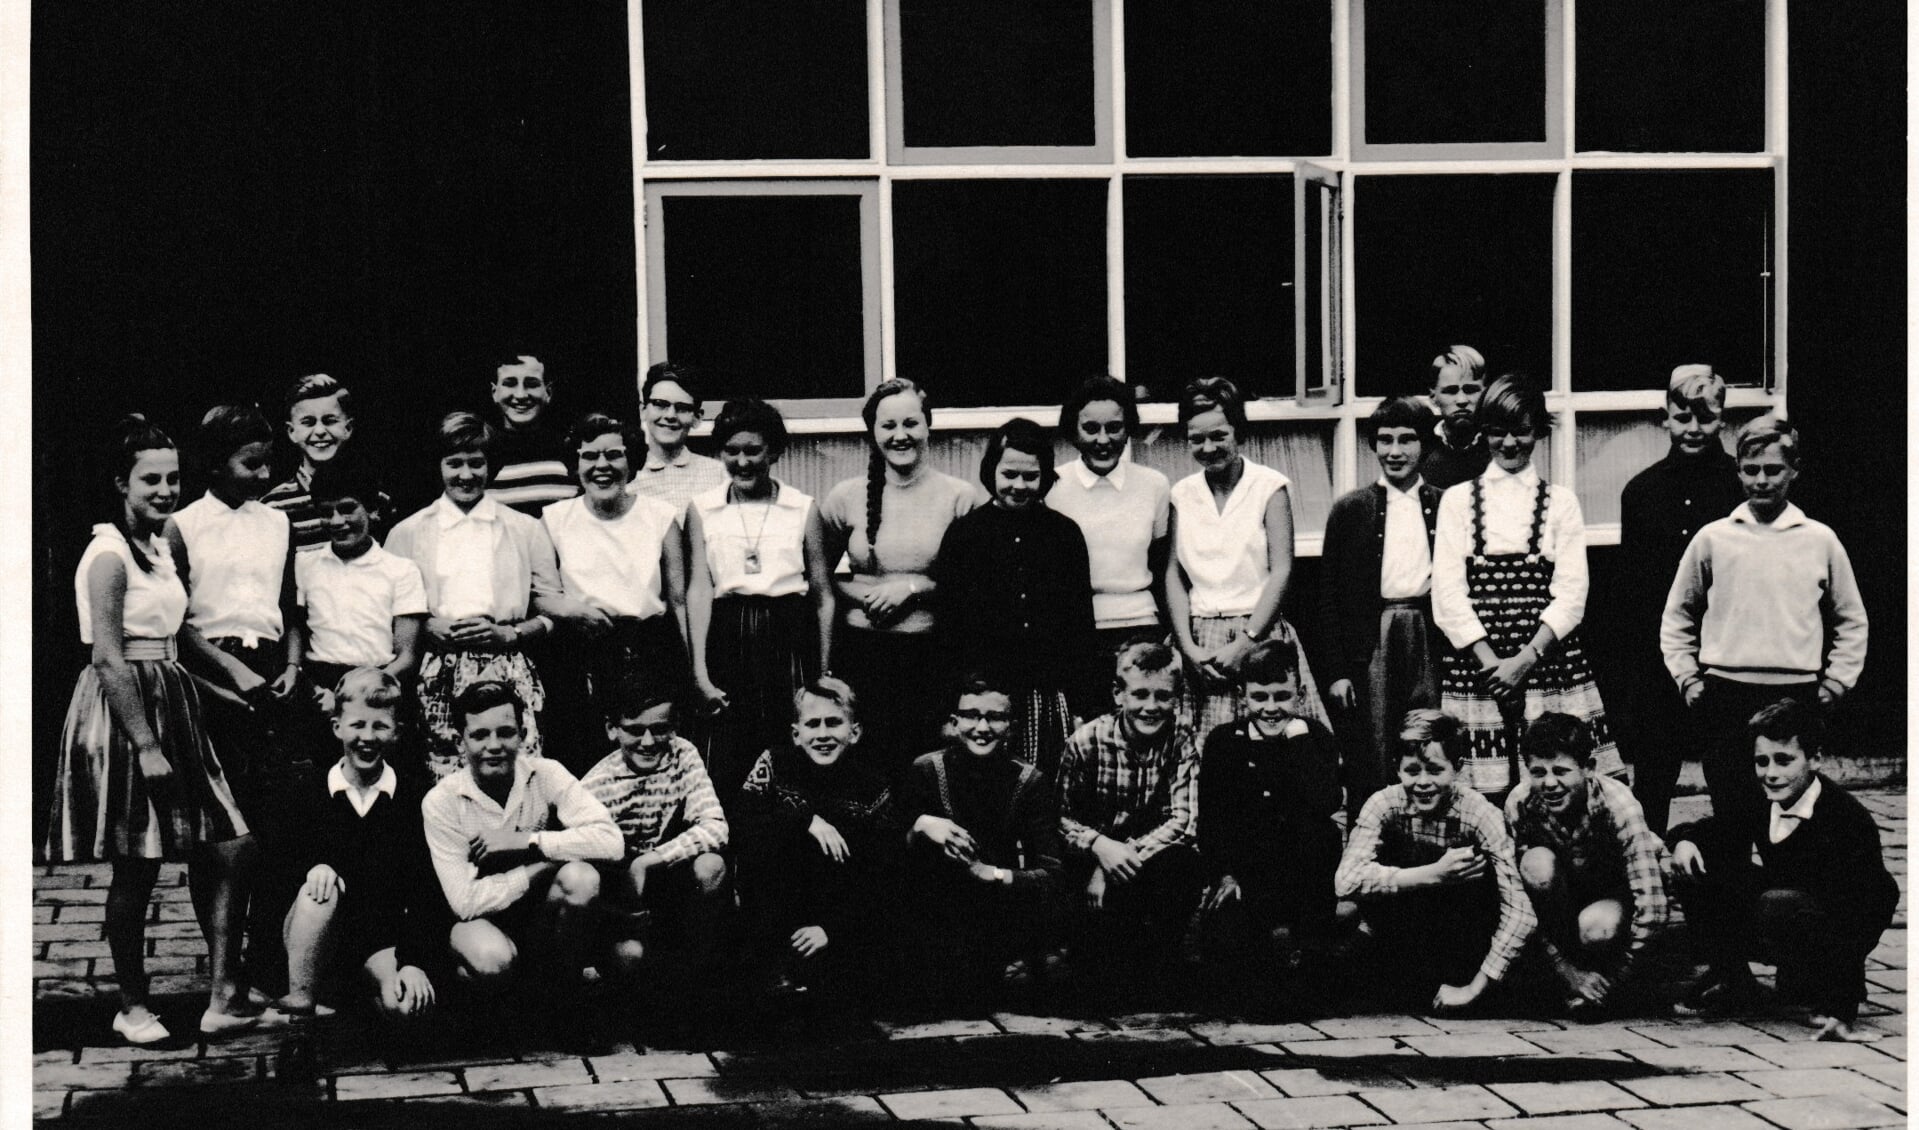 Hierbij mijn klassenfoto uit najaar 1960, genomen toen we in het noodgebouw aan de IJssellaan zaten. Ineke is het vijfde meisje van links: Ineke van der Bas, Klas 1D, 1960-‘61.